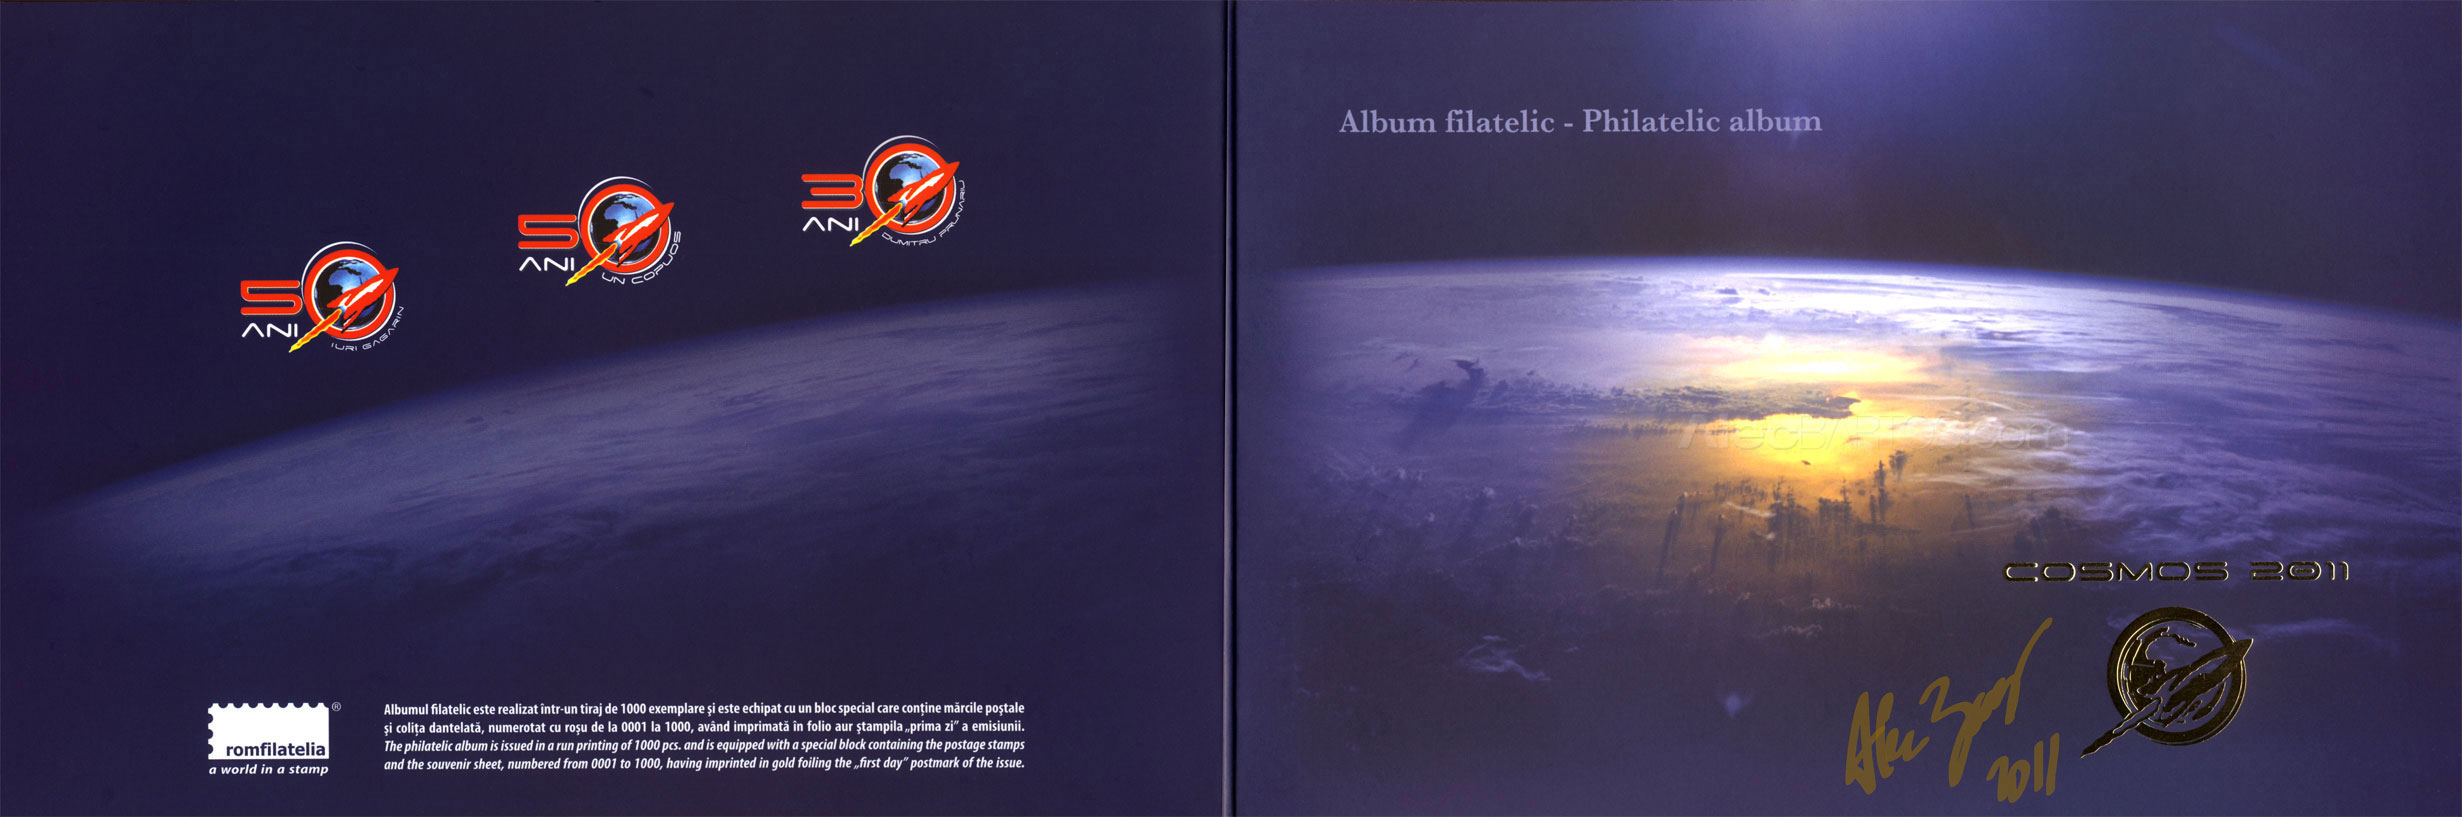 philatelic_album_cover-copy